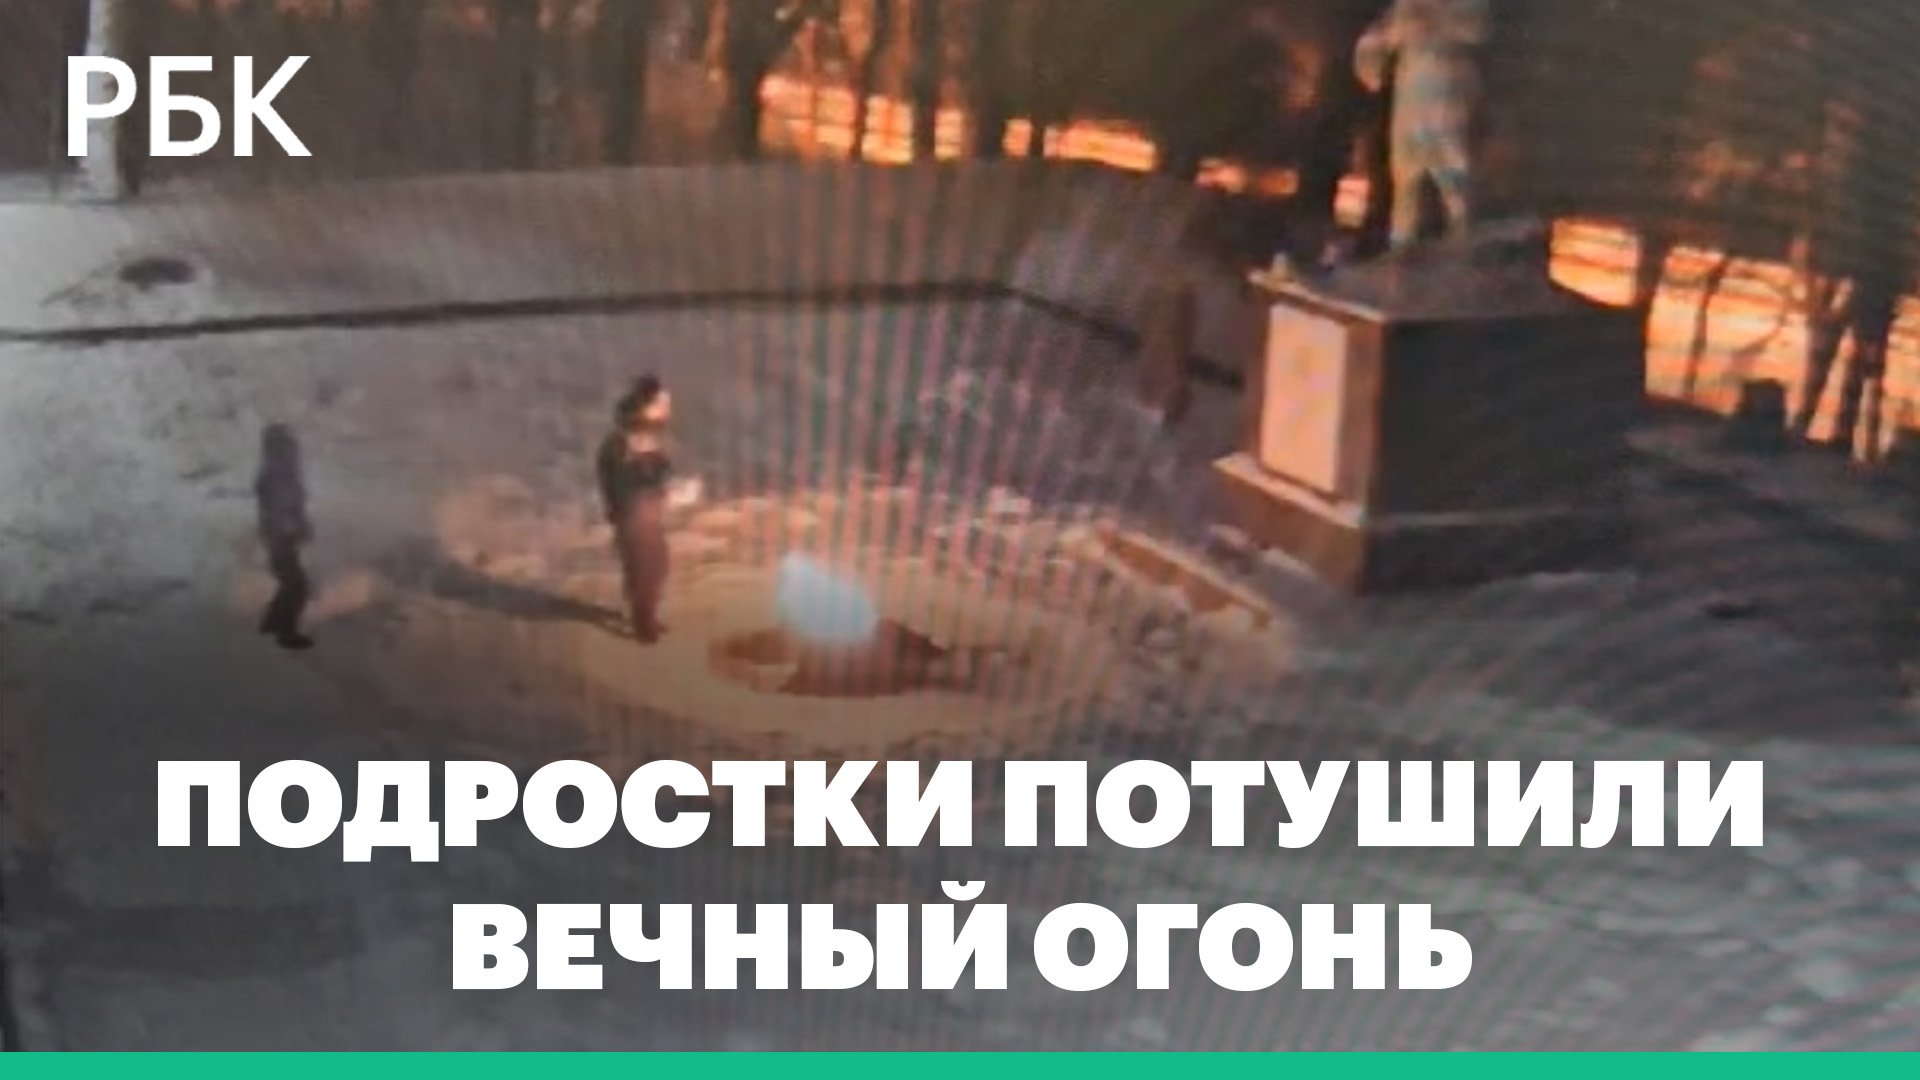 Подростки потушили Вечный огонь в пригороде Санкт-Петербурга